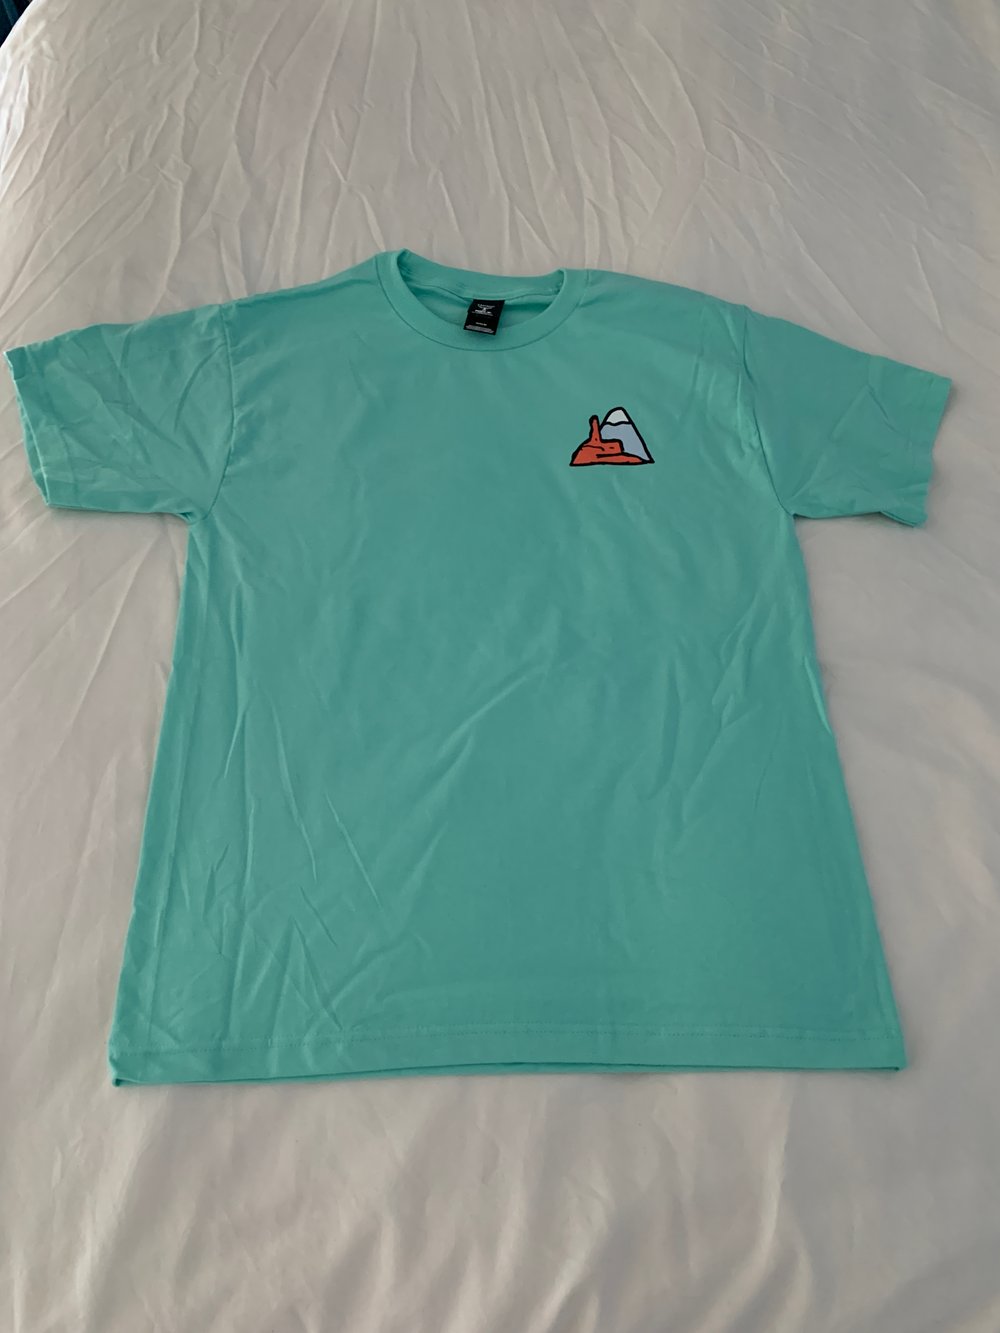 Image of Colorado Shirt